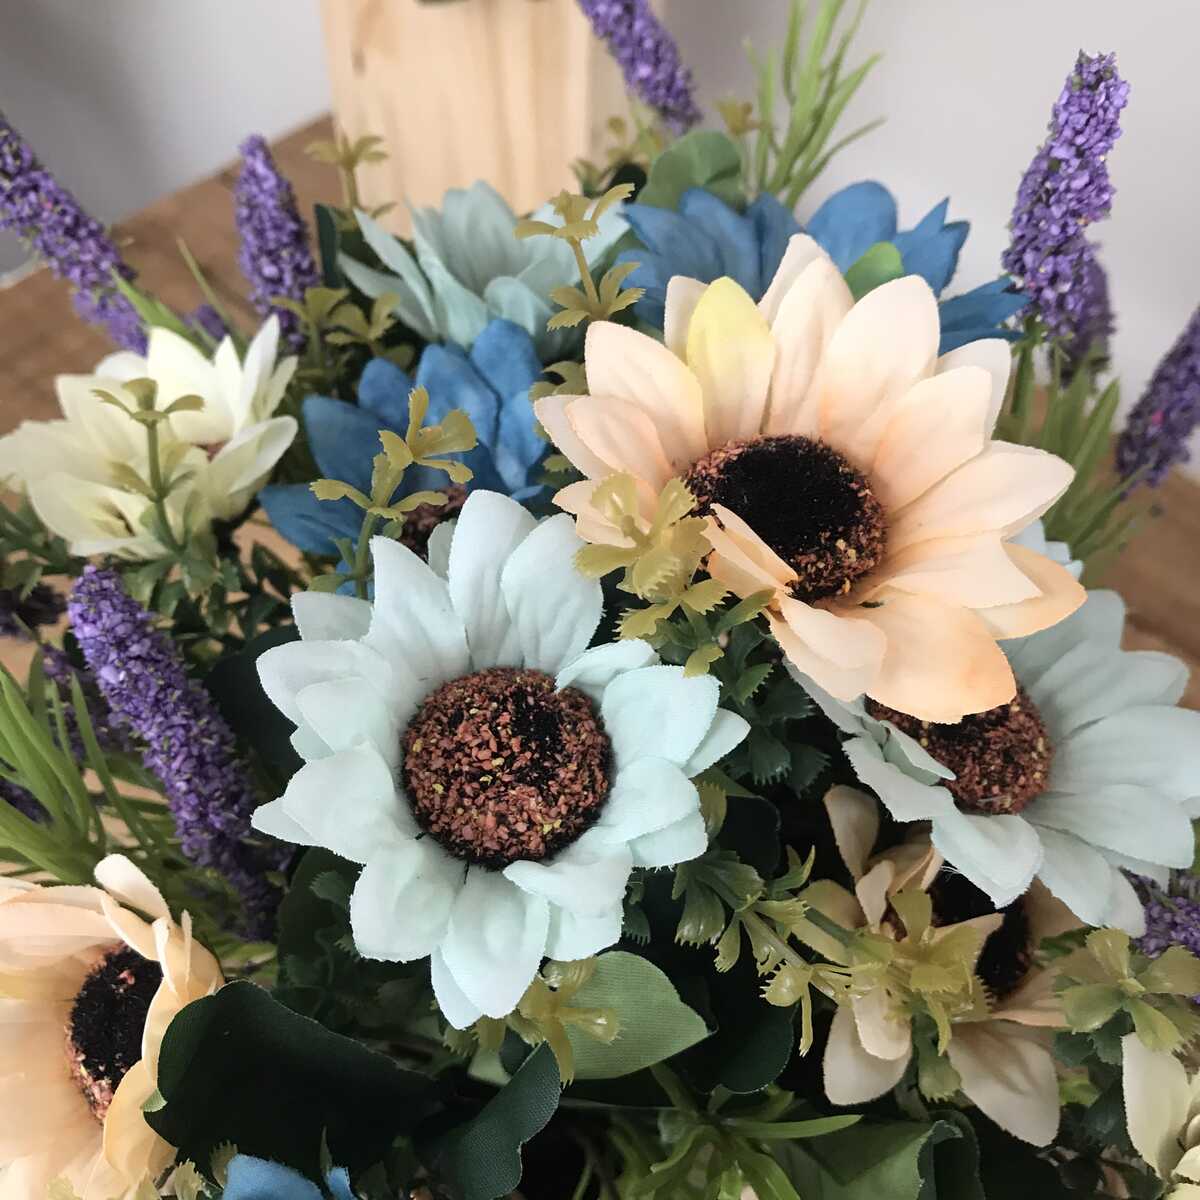 Bình Hoa Giả - Hoa Cúc Nhỏ Và Hoa Lavender - Hoa Vải Cao Cấp - Hoa Đẹp Để Bàn